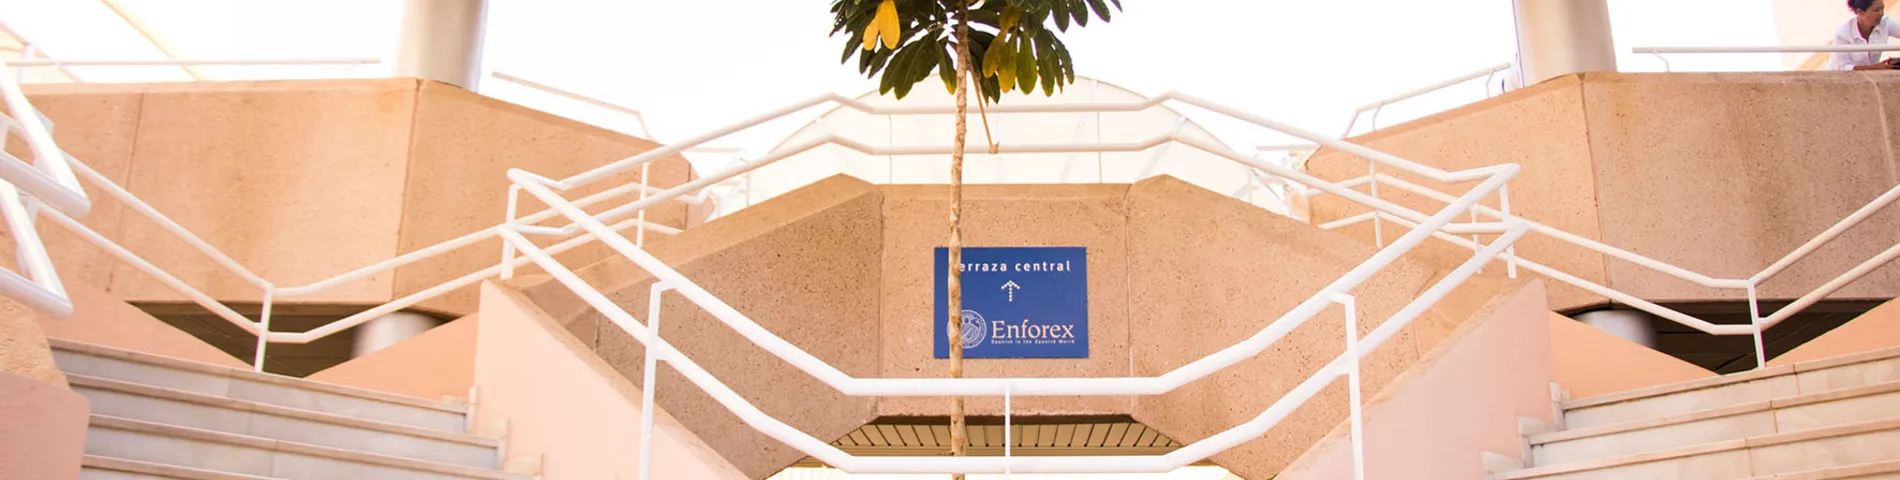 Enforex International Summer Centre - Centro resim 1